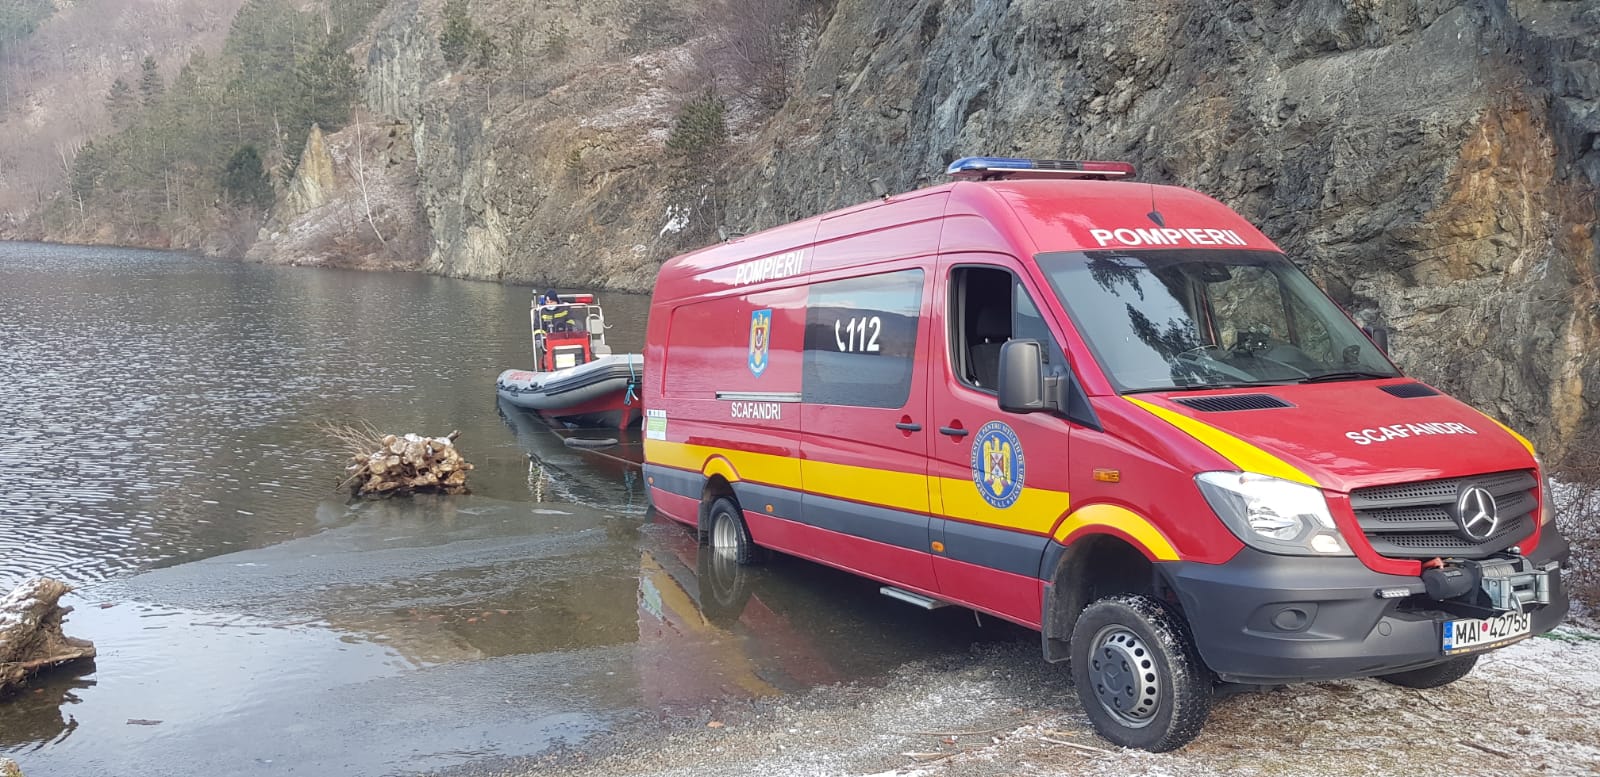 Alertă în zona barajului Someșul Cald! Pompierii caută o mașină căzută în lacul Tarnița